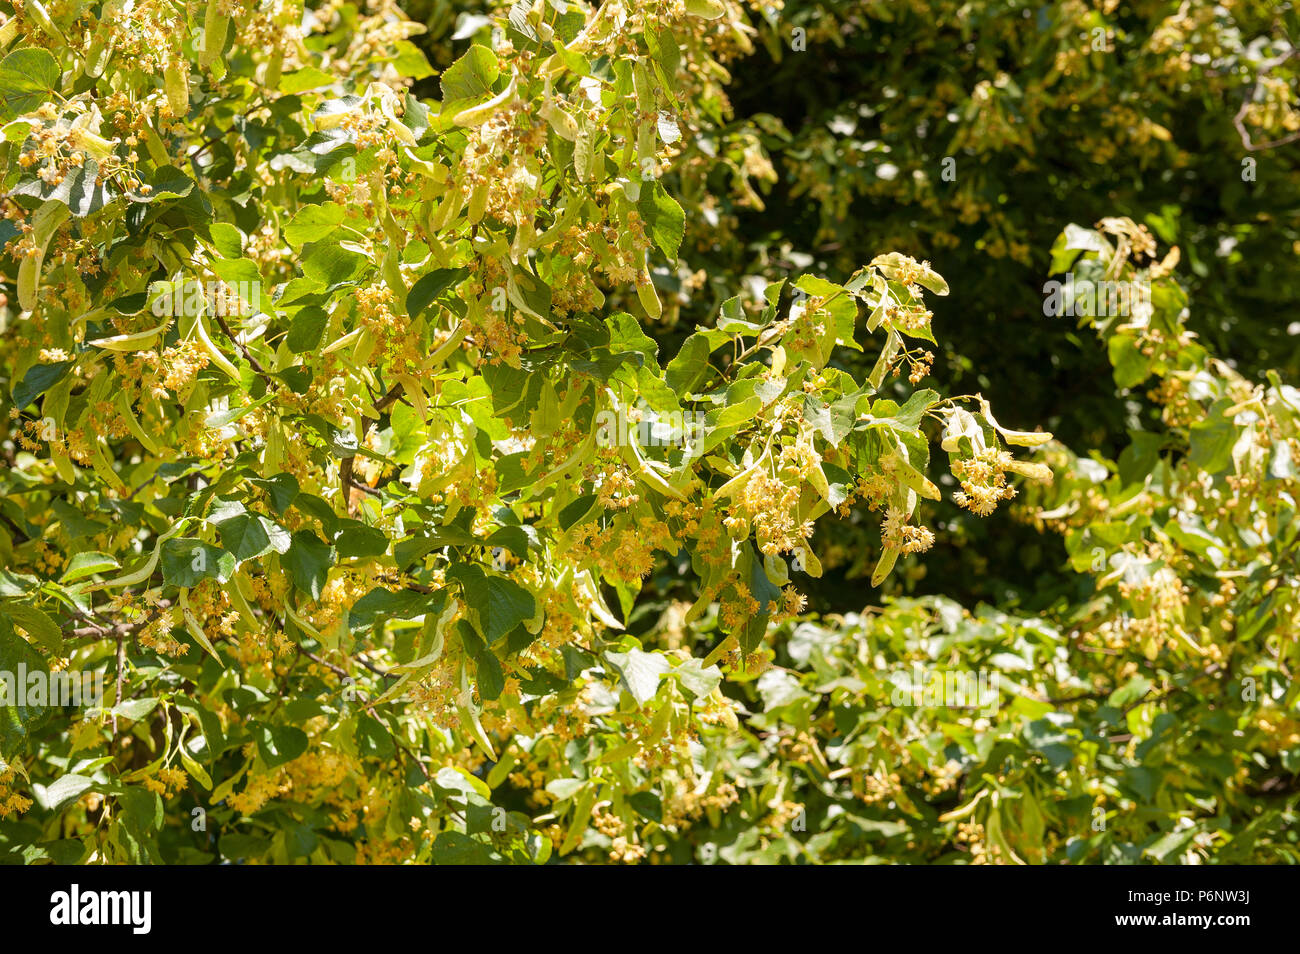 Tilleul commun collantes, Tilia x europaea, fleurs attirant les insectes, contre les feuilles camouflés, hybride entre T. cordata x T.platyphyllos Banque D'Images